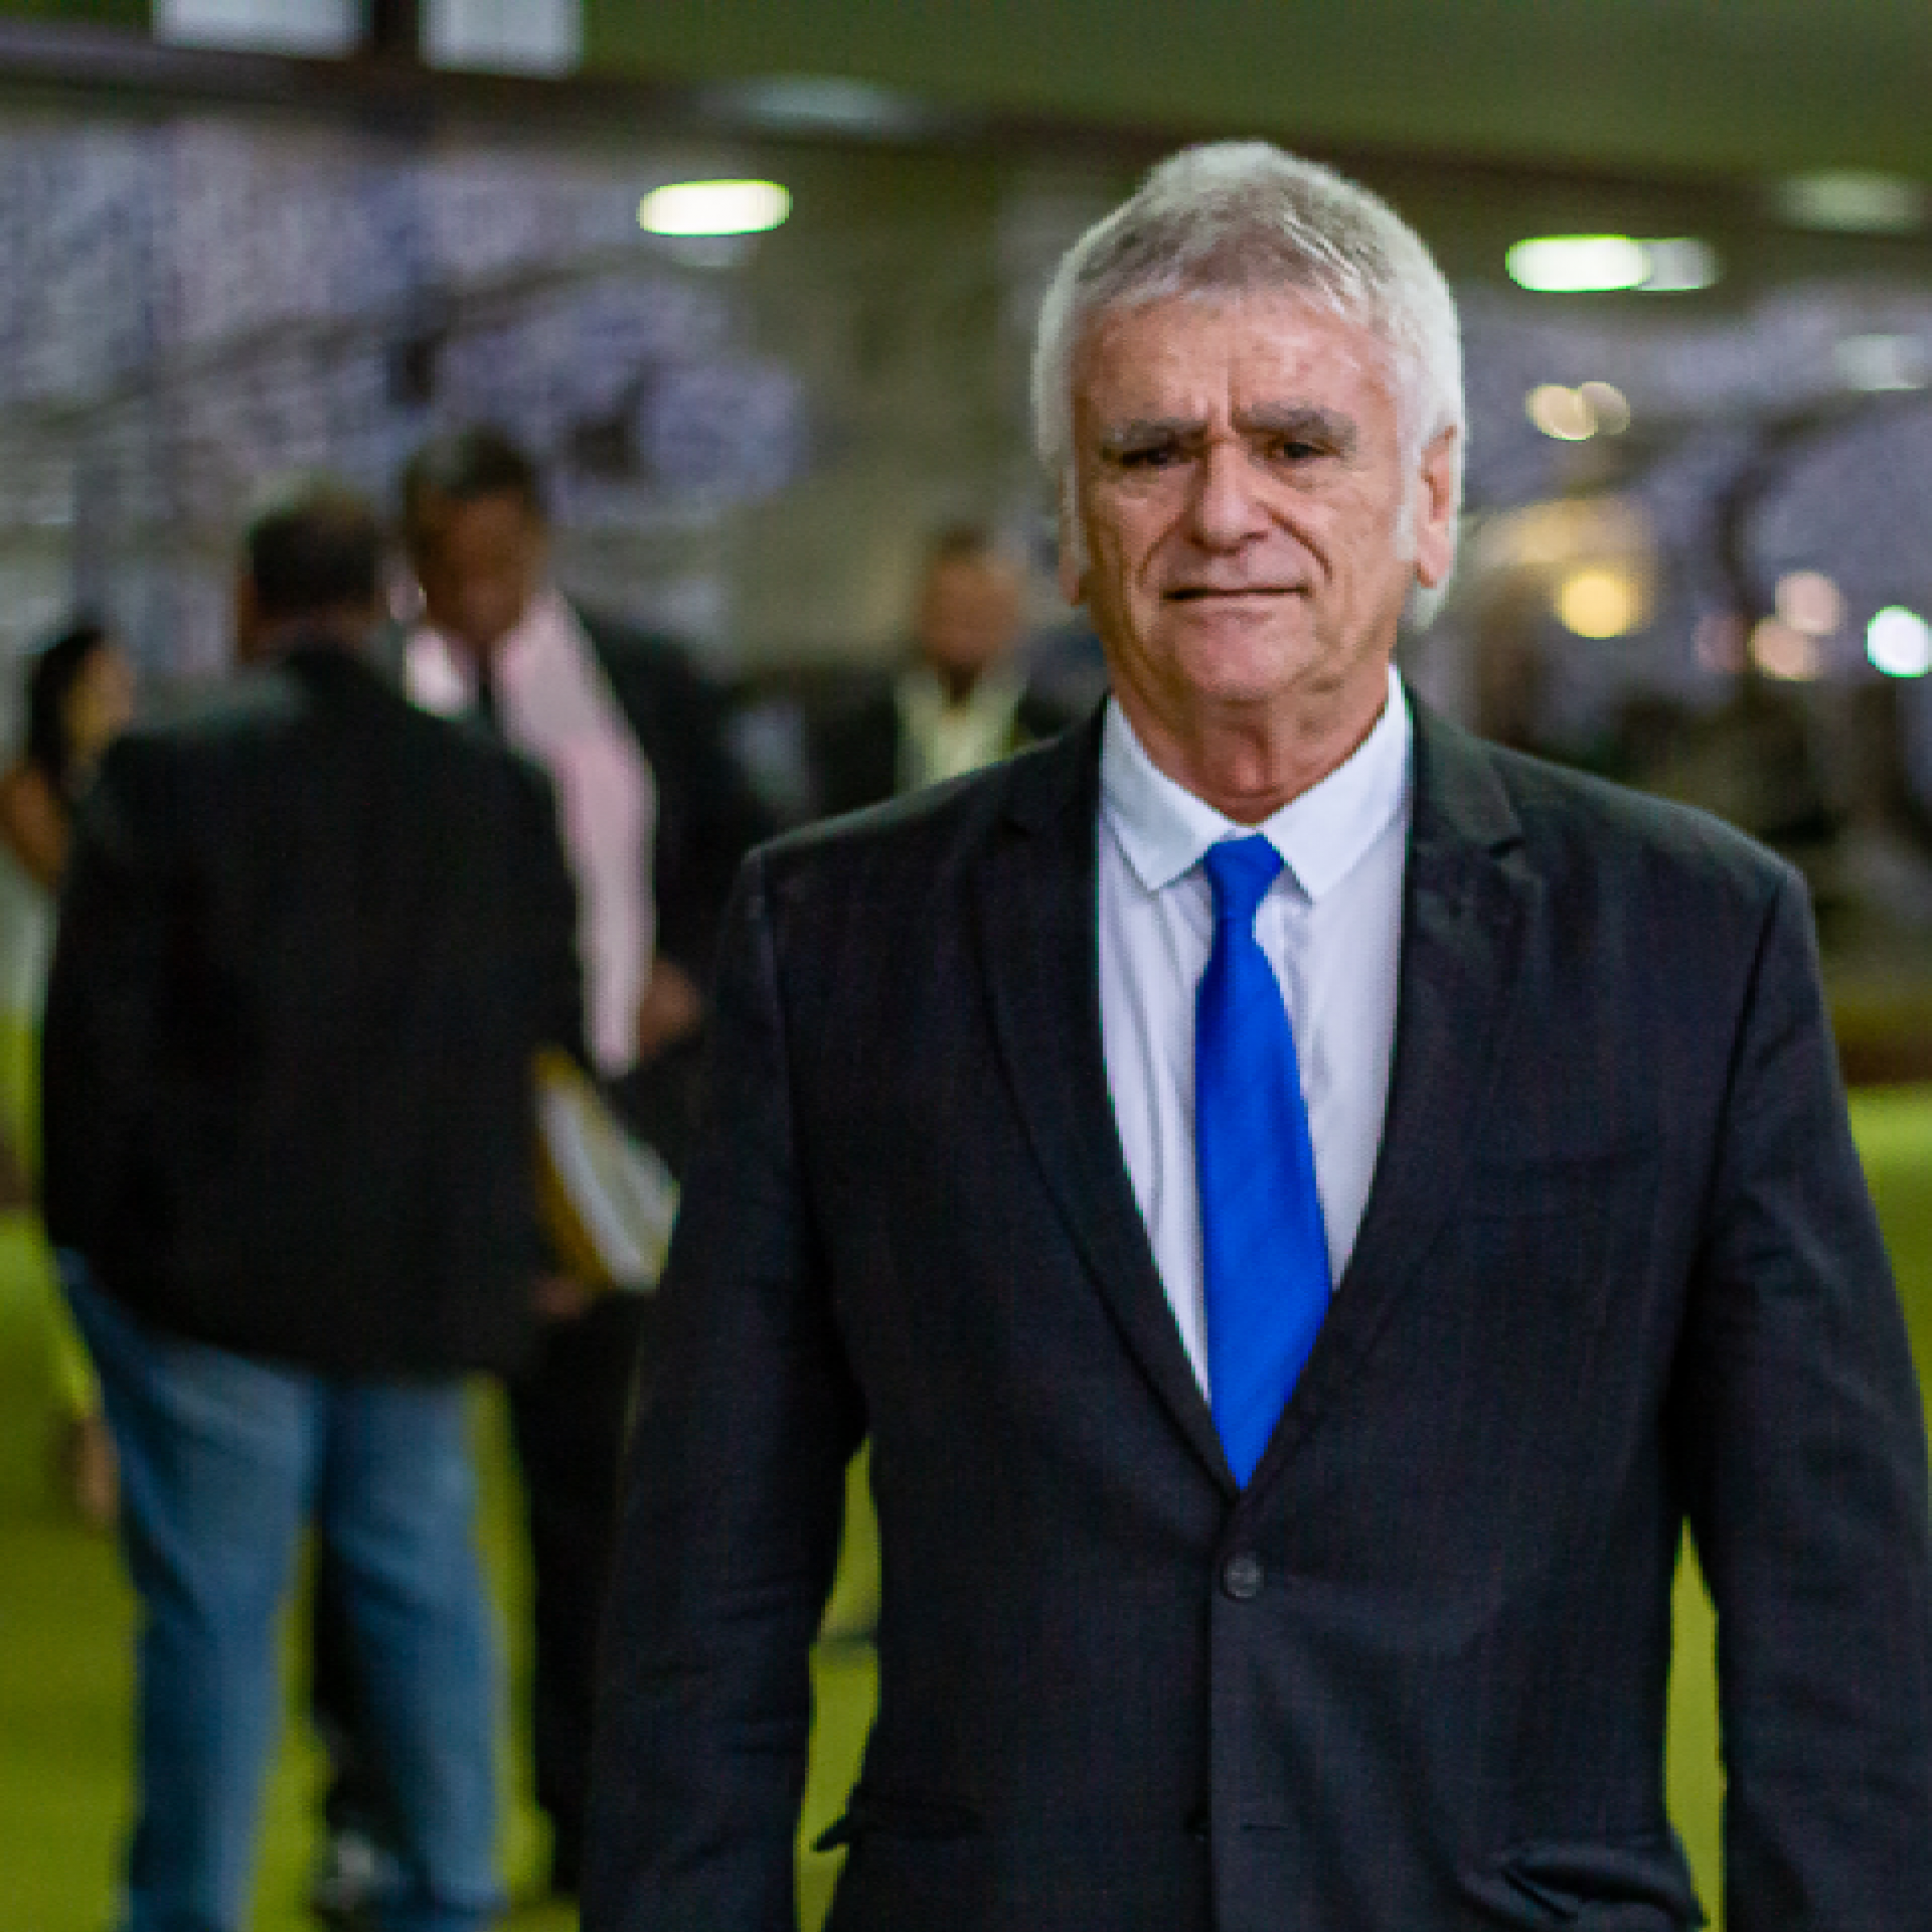 Roberto Bucar acompanha de perto sessões, audiências e bastidores da política brasileira. - ANAJUSTRA Federal